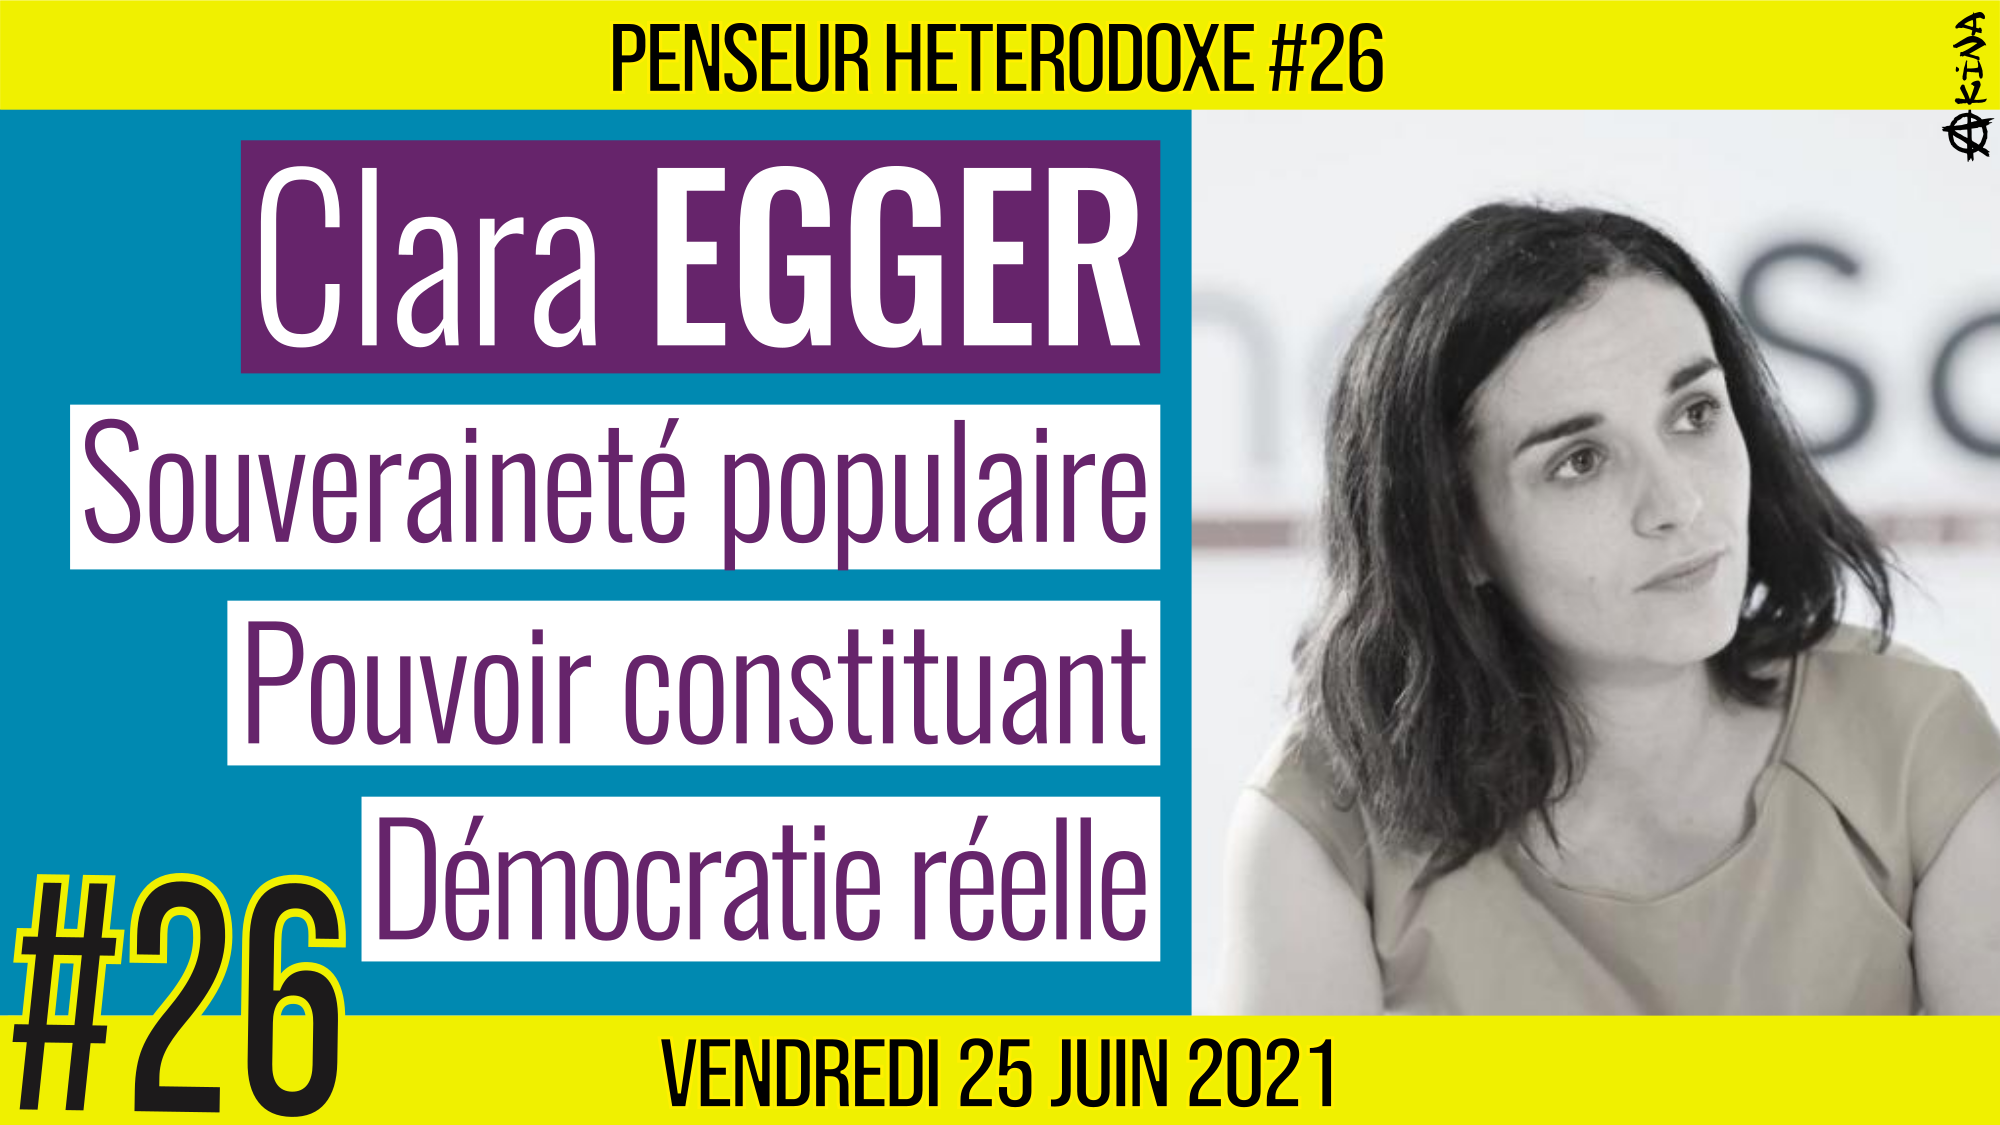 💡 PENSEUR HÉTÉRODOXE #26 🗣 Clara EGGER 🎯 Souveraineté populaire & Démocratie 📆 25-06-2021